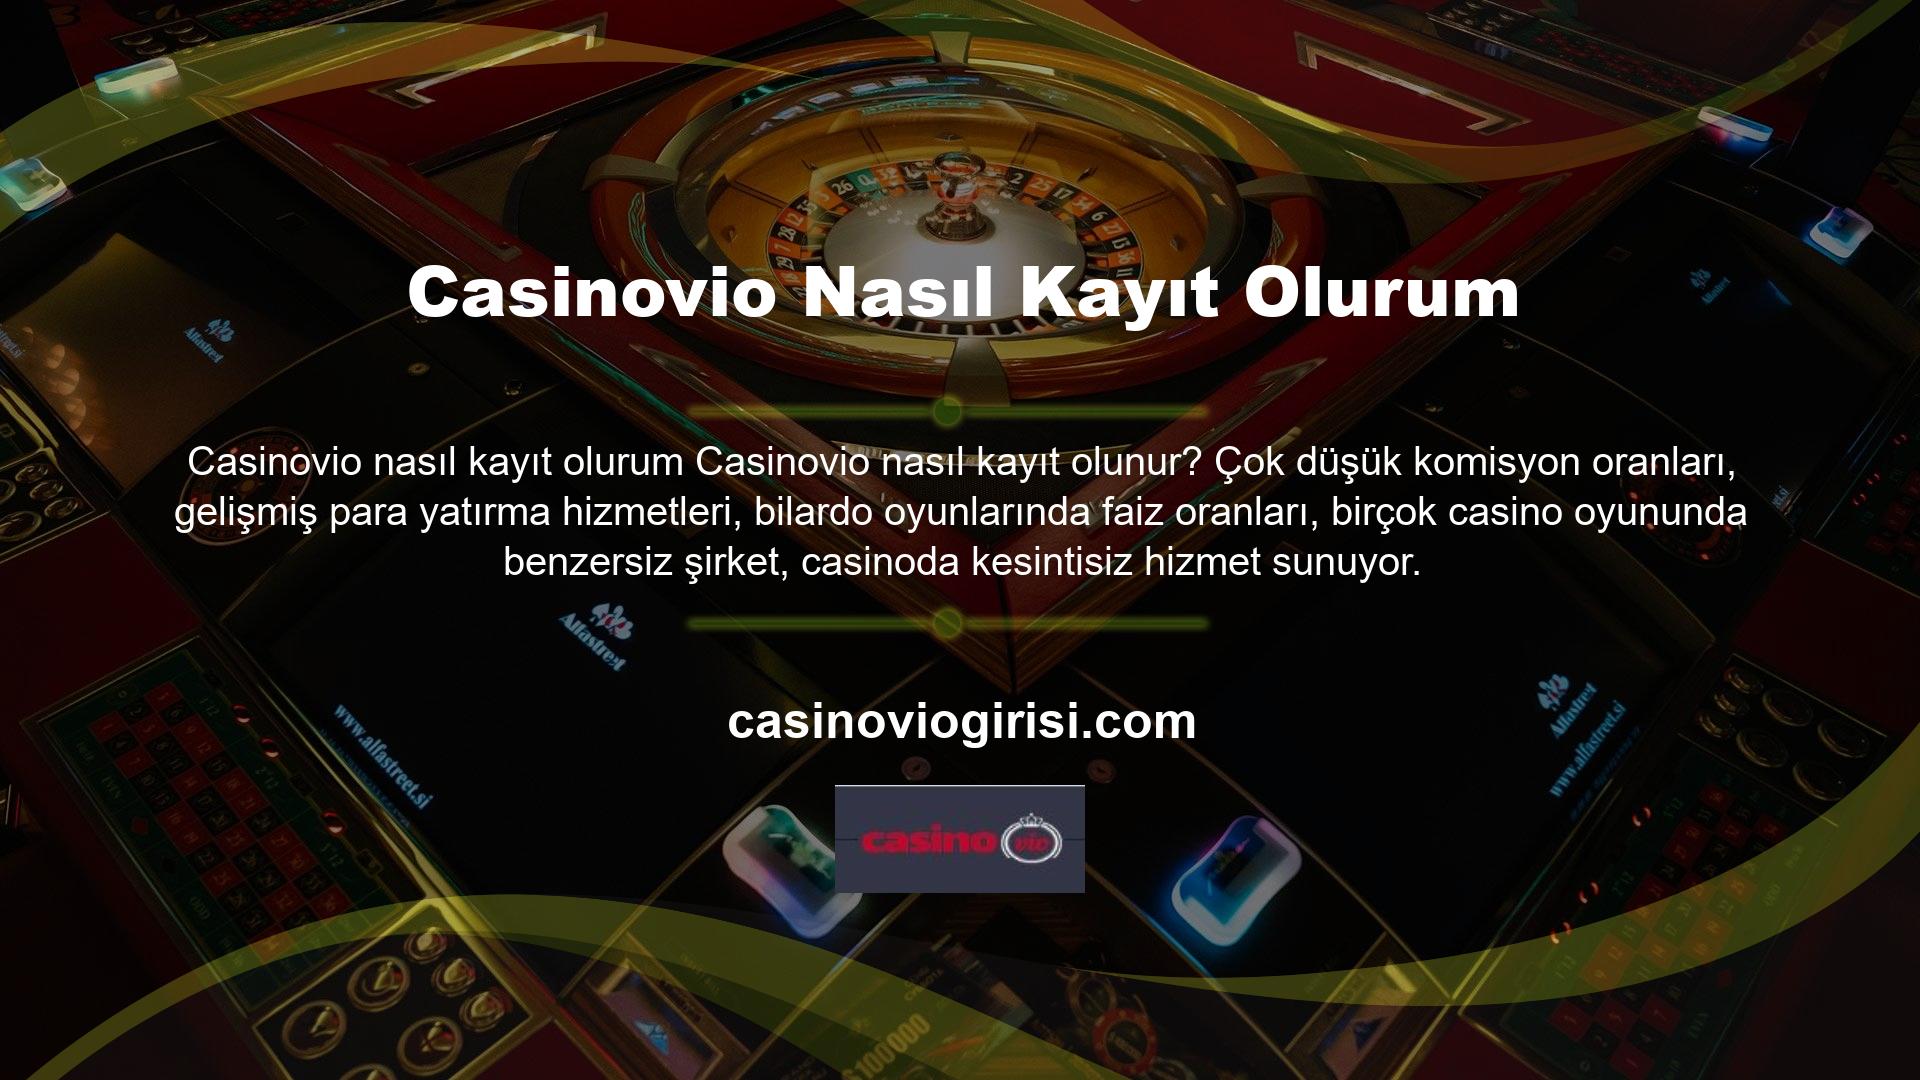 Lütfen Casinovio katılmadan önce zorunlu şartlar ve koşullar sayfasını inceleyin